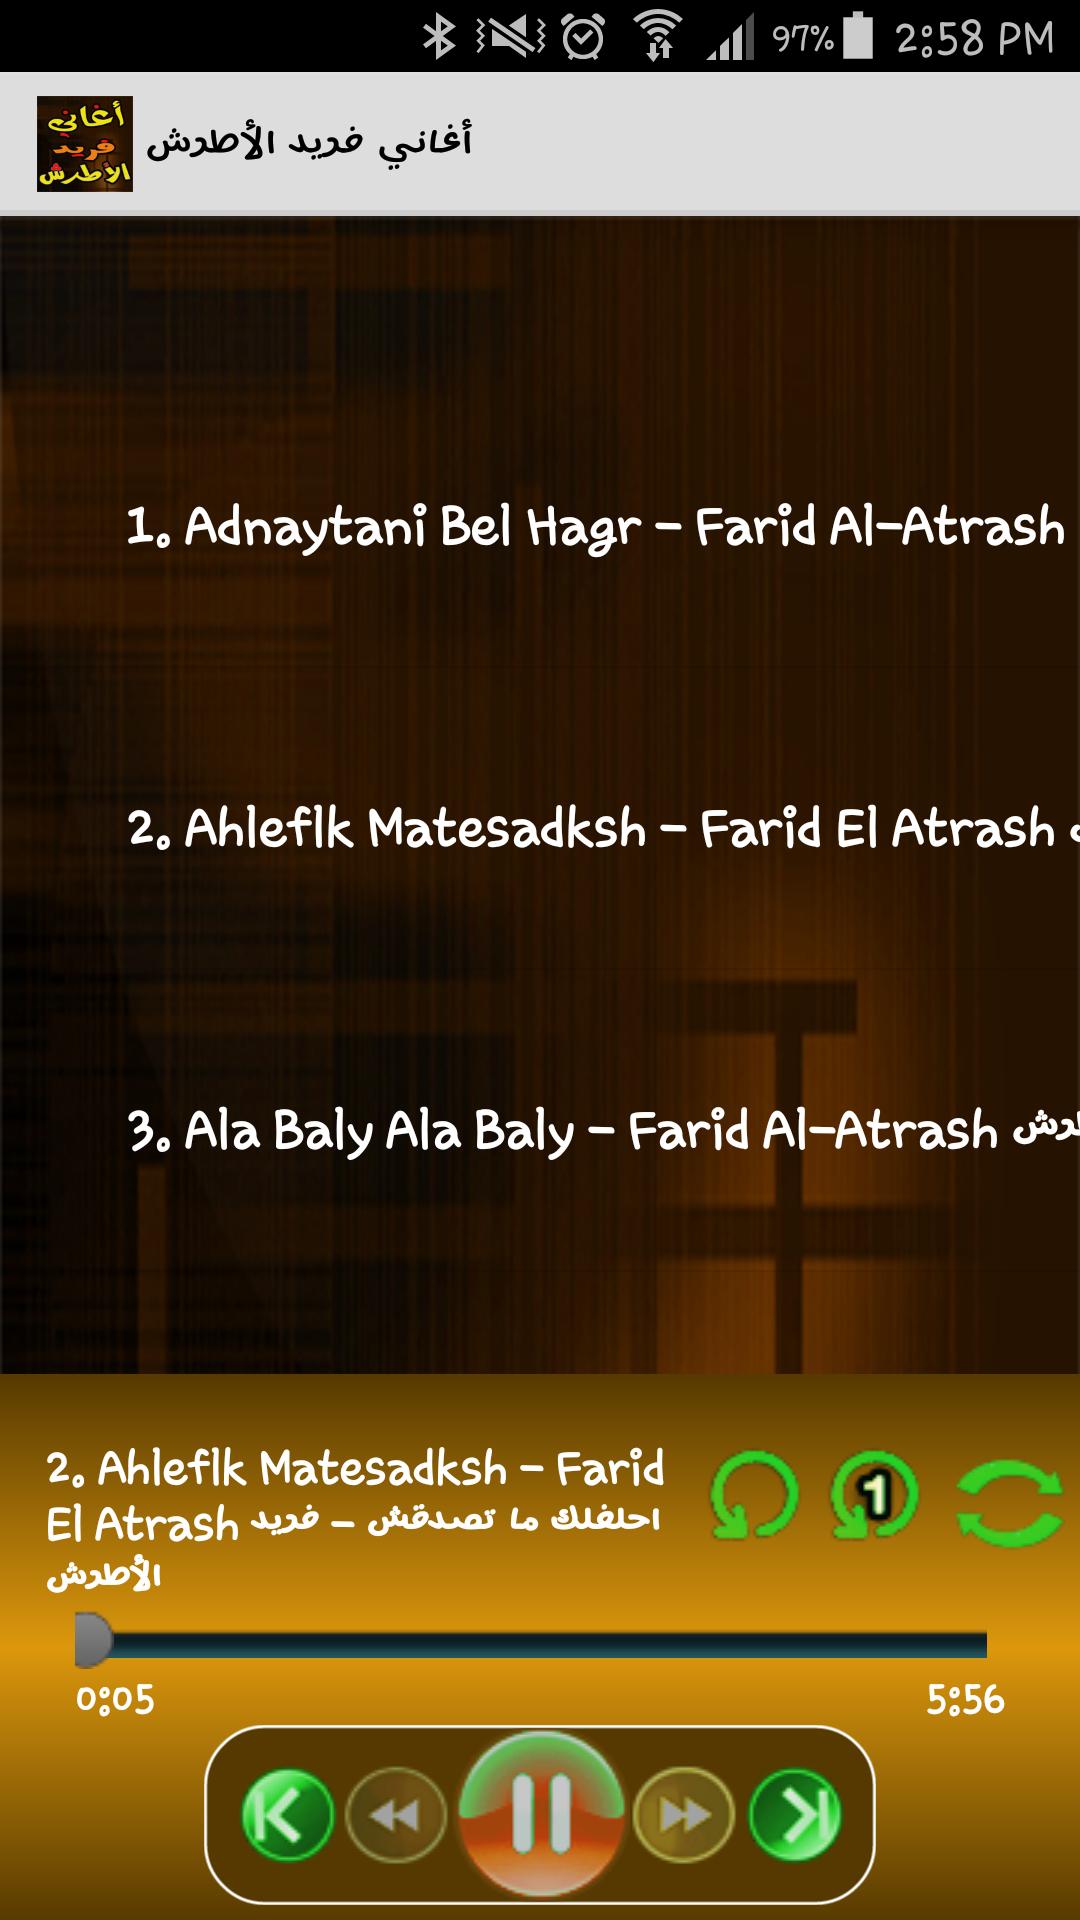 طرب فريد الأطرش Farid Atrash For Android Apk Download